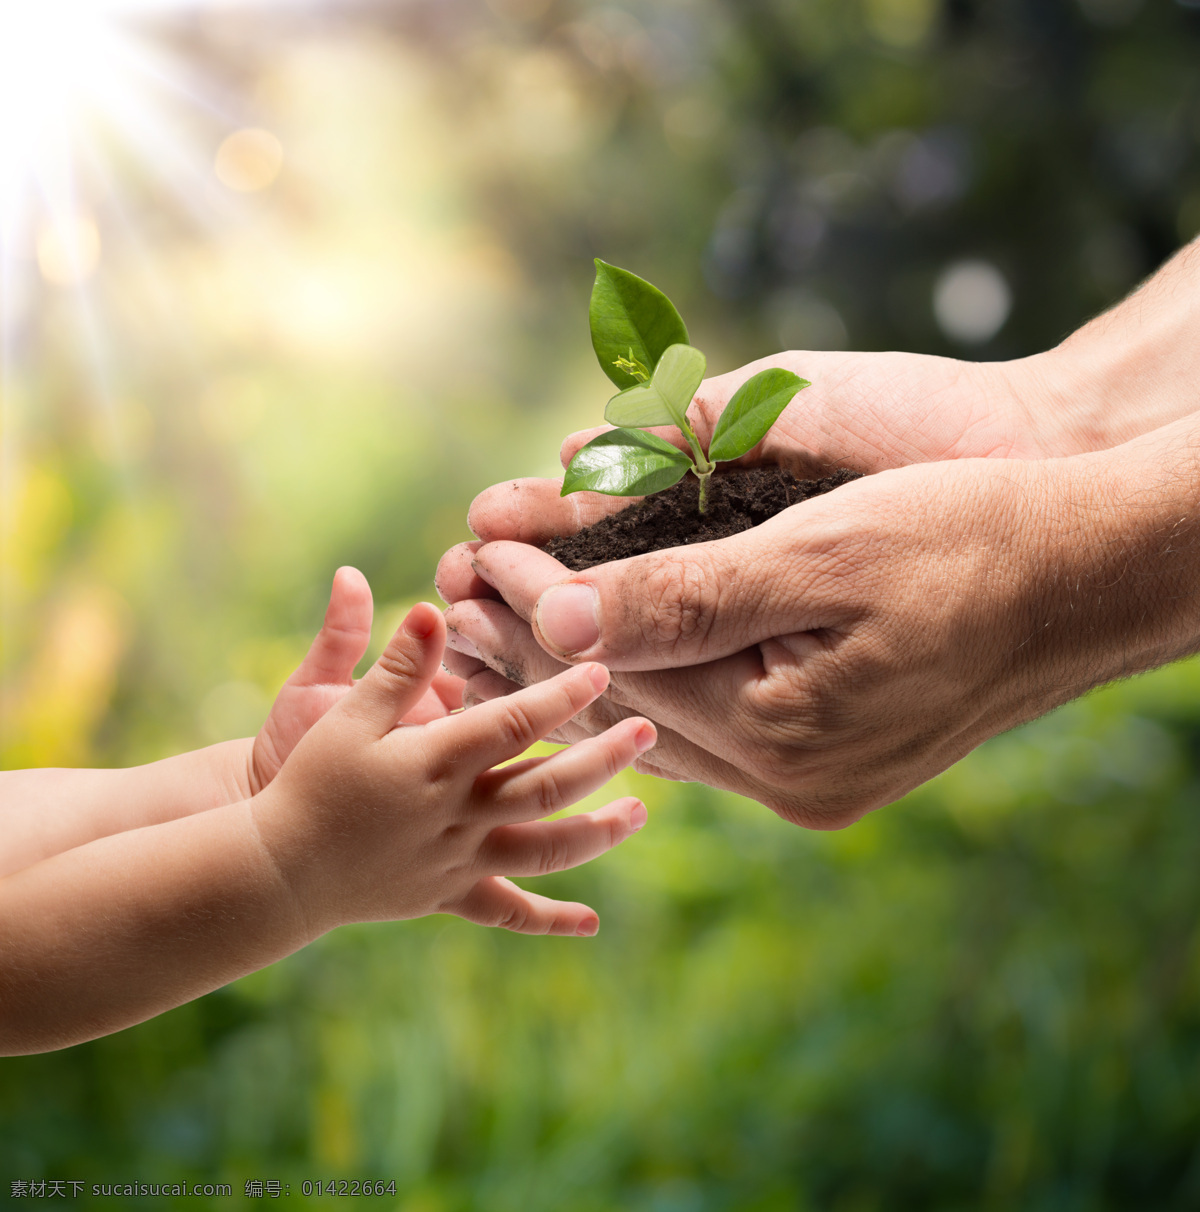 手心的树苗 手掌 手捧 希望 植物 手捧树苗 幼儿 婴儿手 土壤 环保 绿色 春天 创意 公益广告